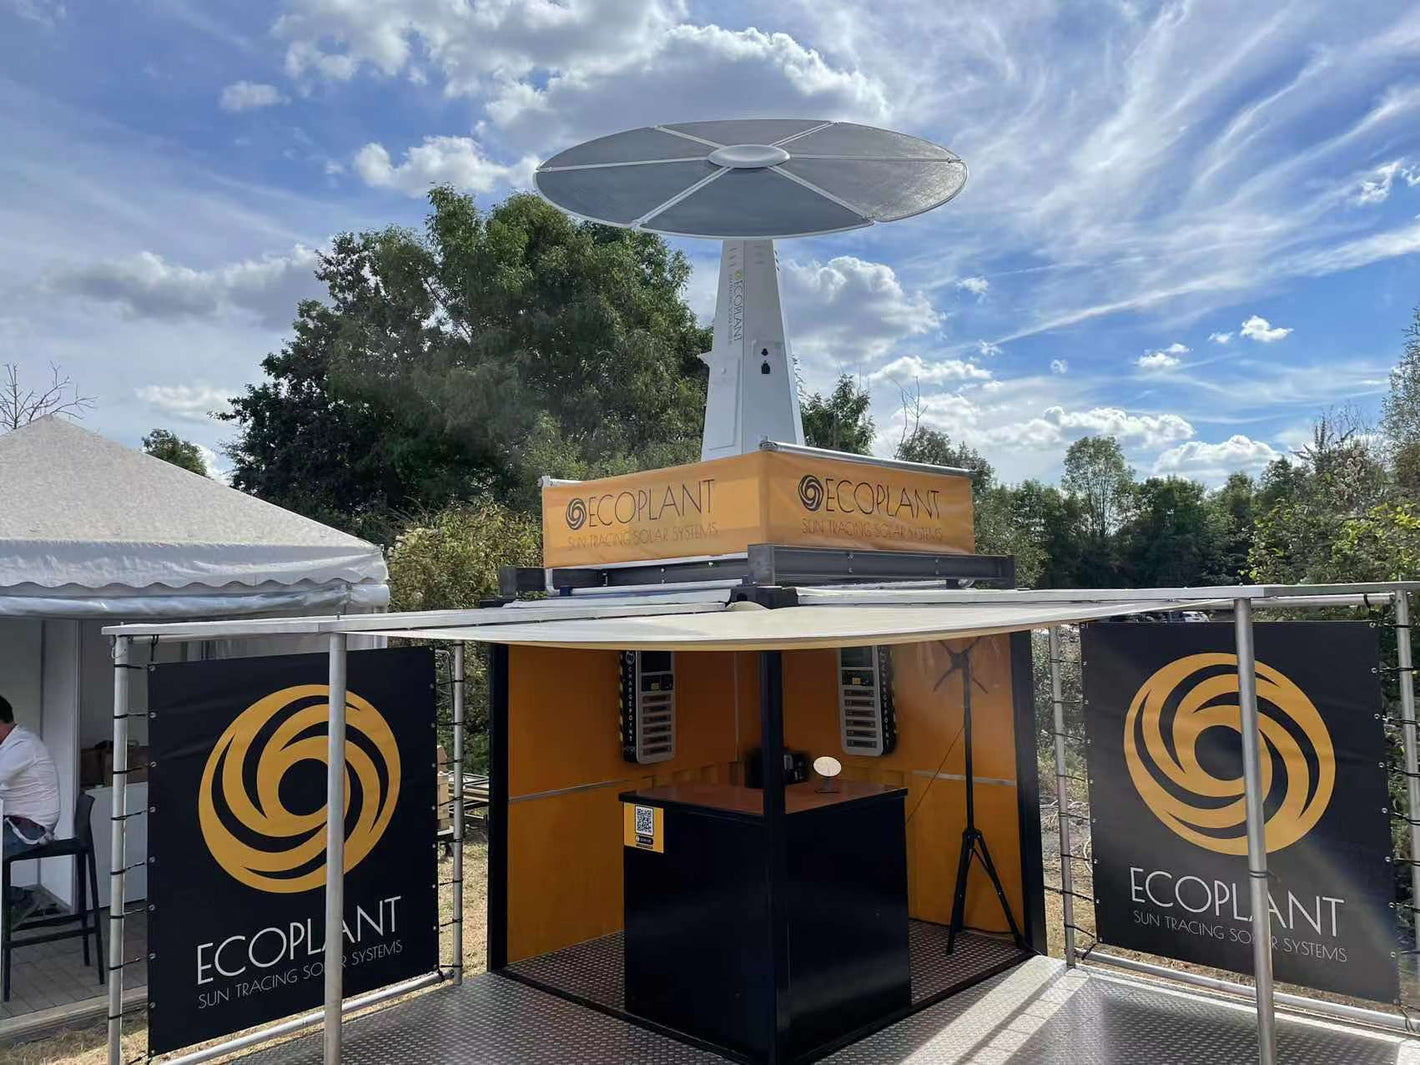 Ecoplant Container Leveling Industrial Power System. Onze ECLIPS is een innovatieve all-in-one eyecatcher voor elk evenement of festival. 